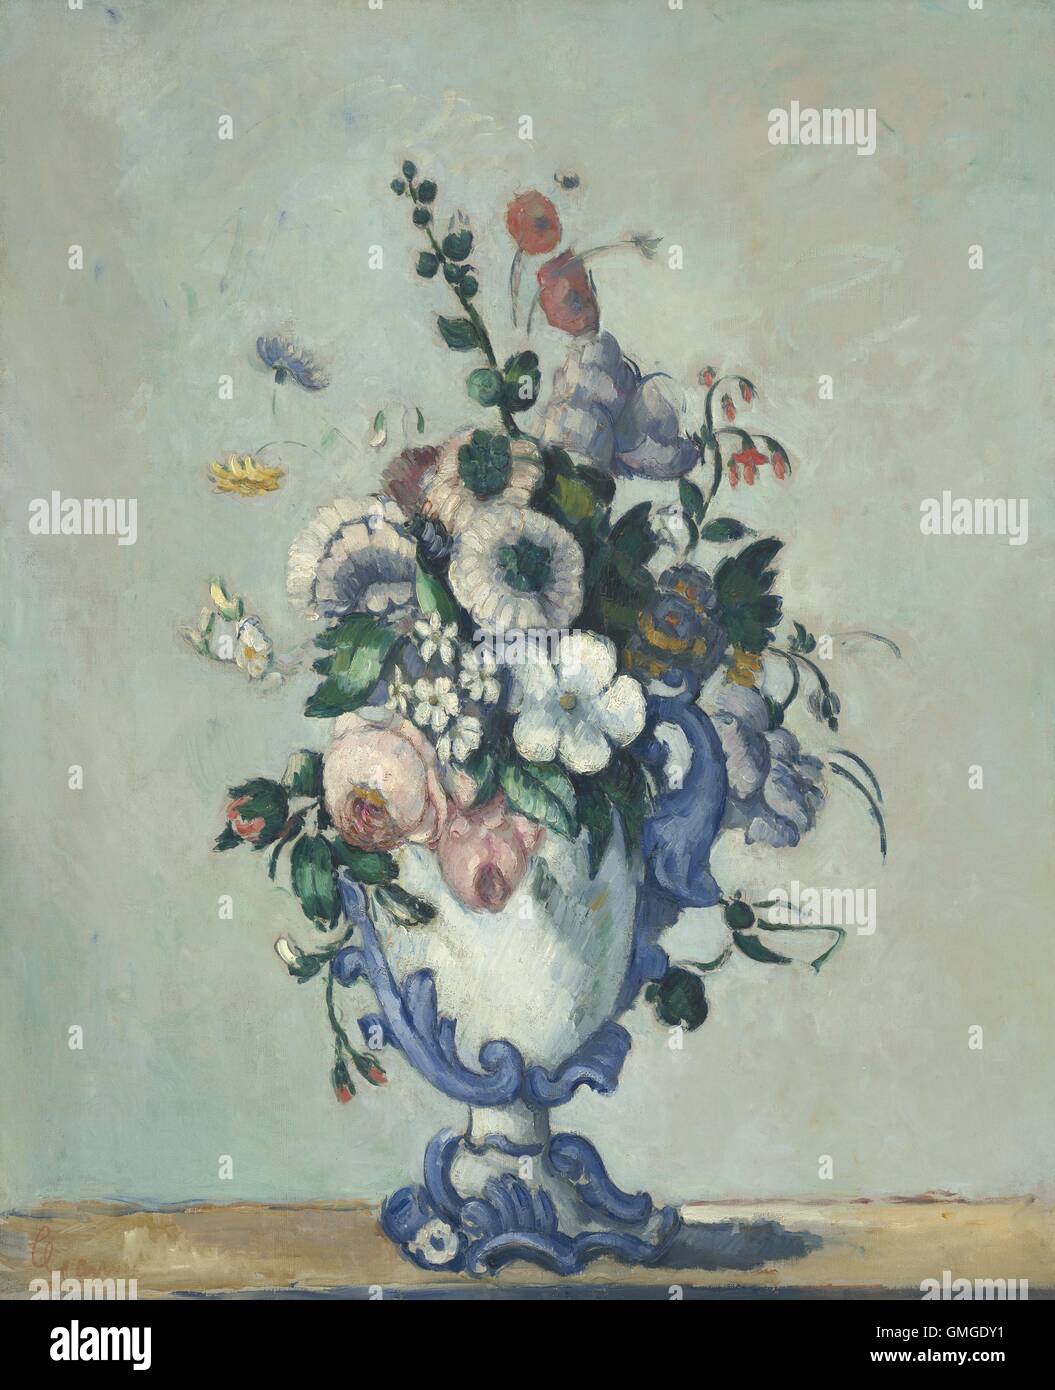 Fleurs dans un vase Rococo, par Paul Cezanne, 1876, le français postimpressionnistes peinture, huile sur toile. Cézanne est devenu plus léger de palettes de l'influence des peintres impressionnistes de Paris. Il expose avec les impressions en 1874 et 1877 (BSLOC 2016 5 226) Banque D'Images